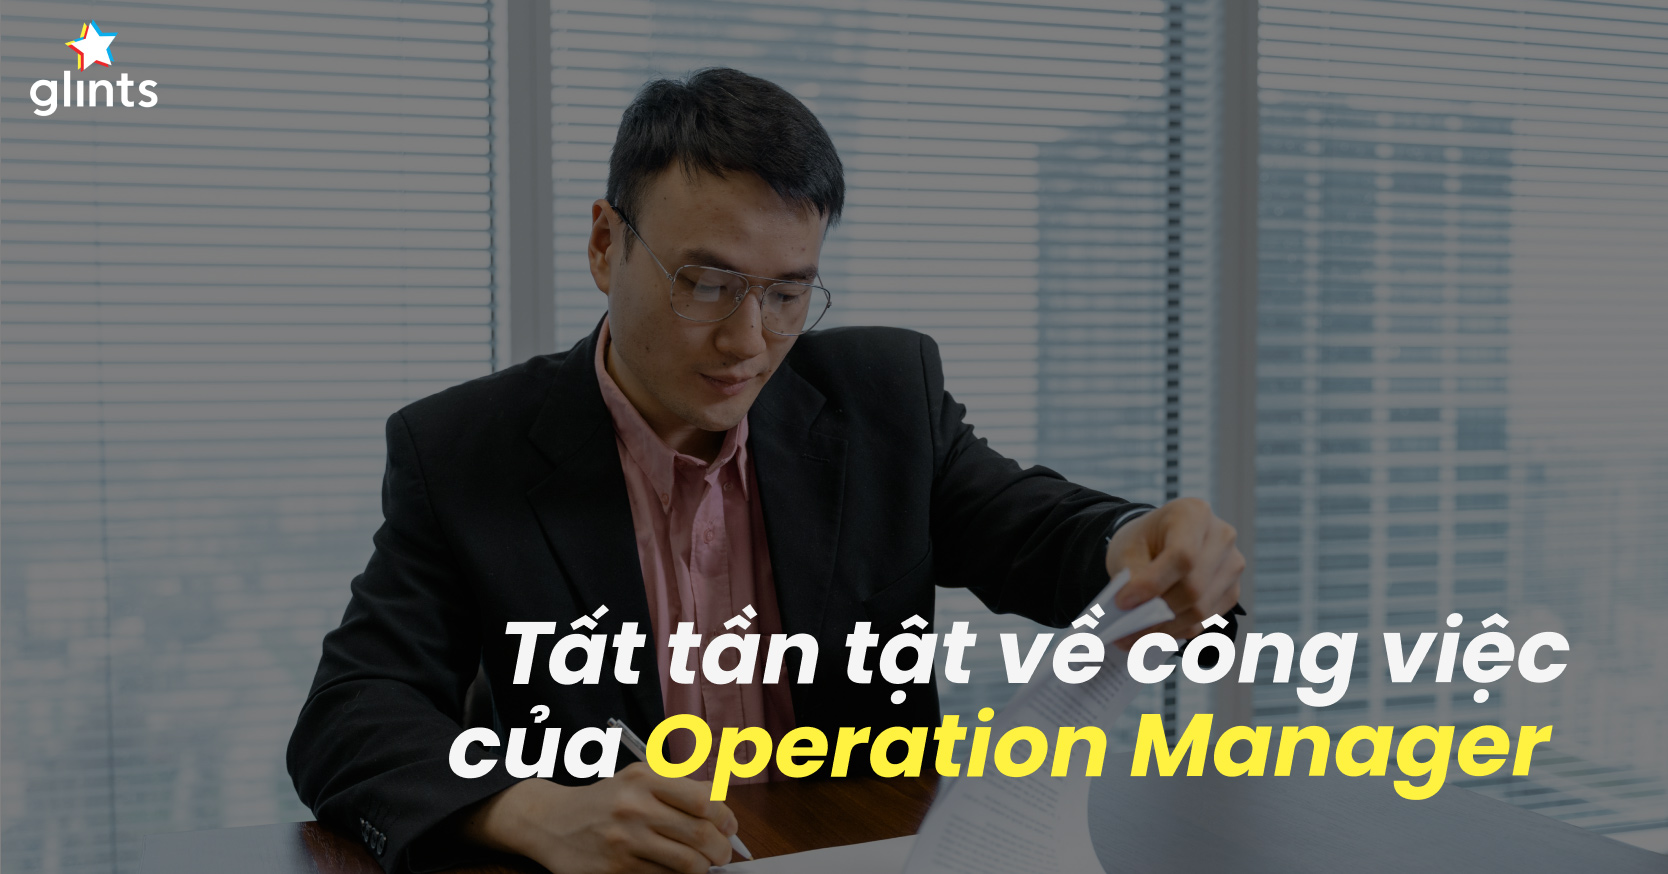 operation manager là gì